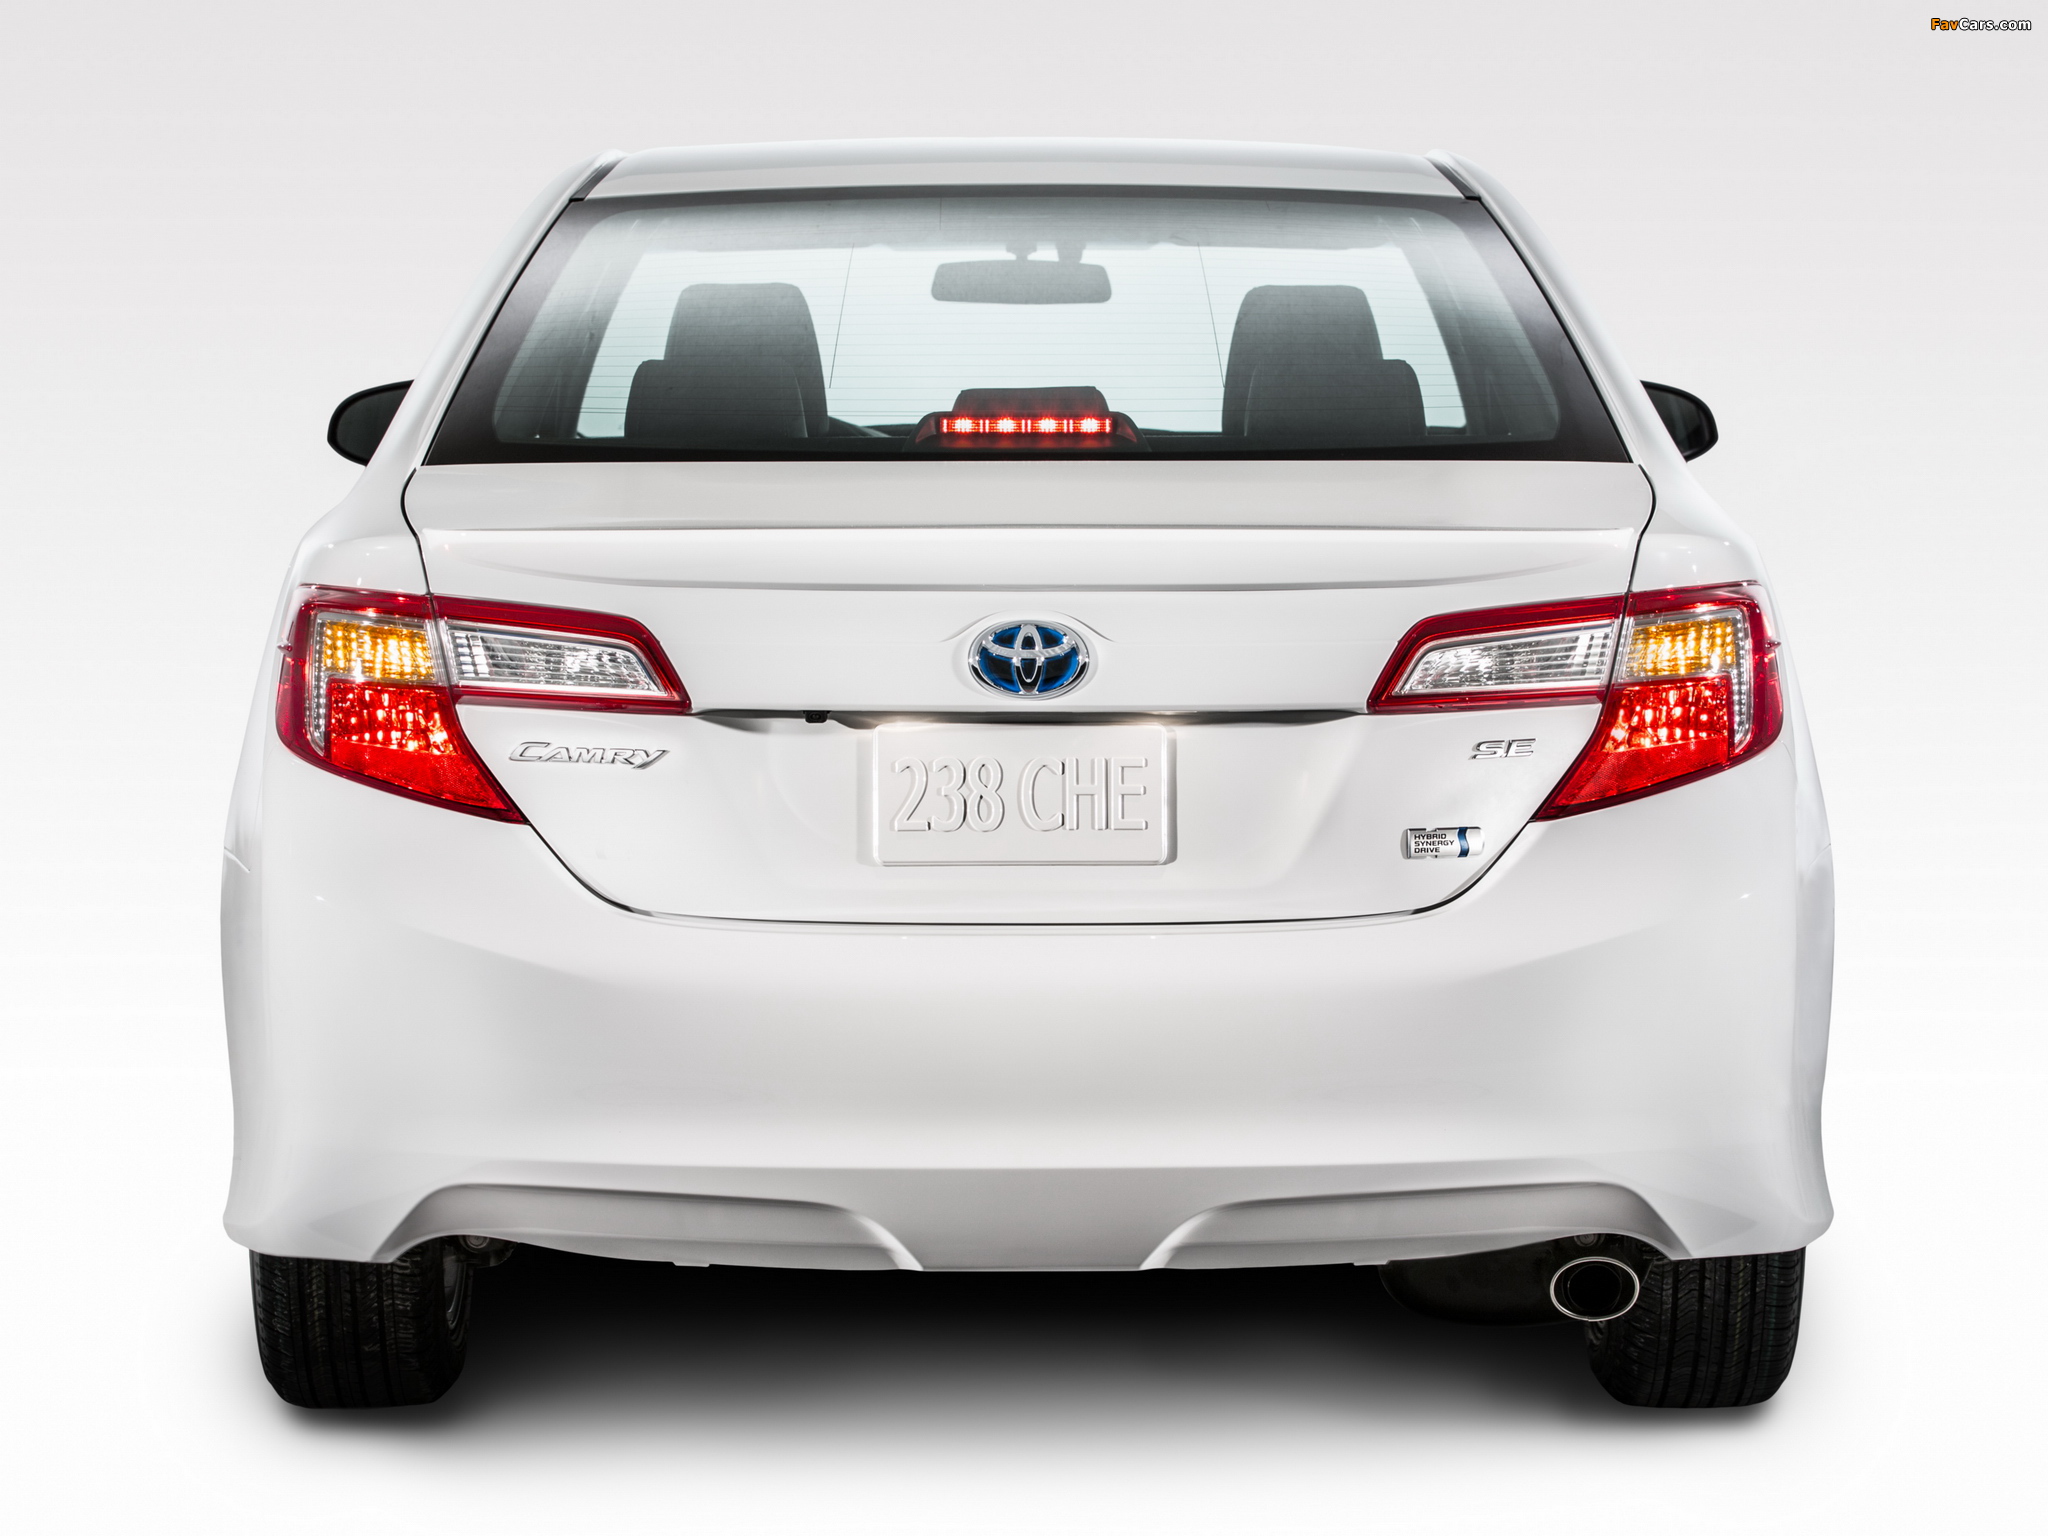 Hybrid 2014. Toyota Camry 2014. Toyota Camry 2014 Hybrid. Toyota Camry se 2014. Toyota Camry se Hybrid 2014.